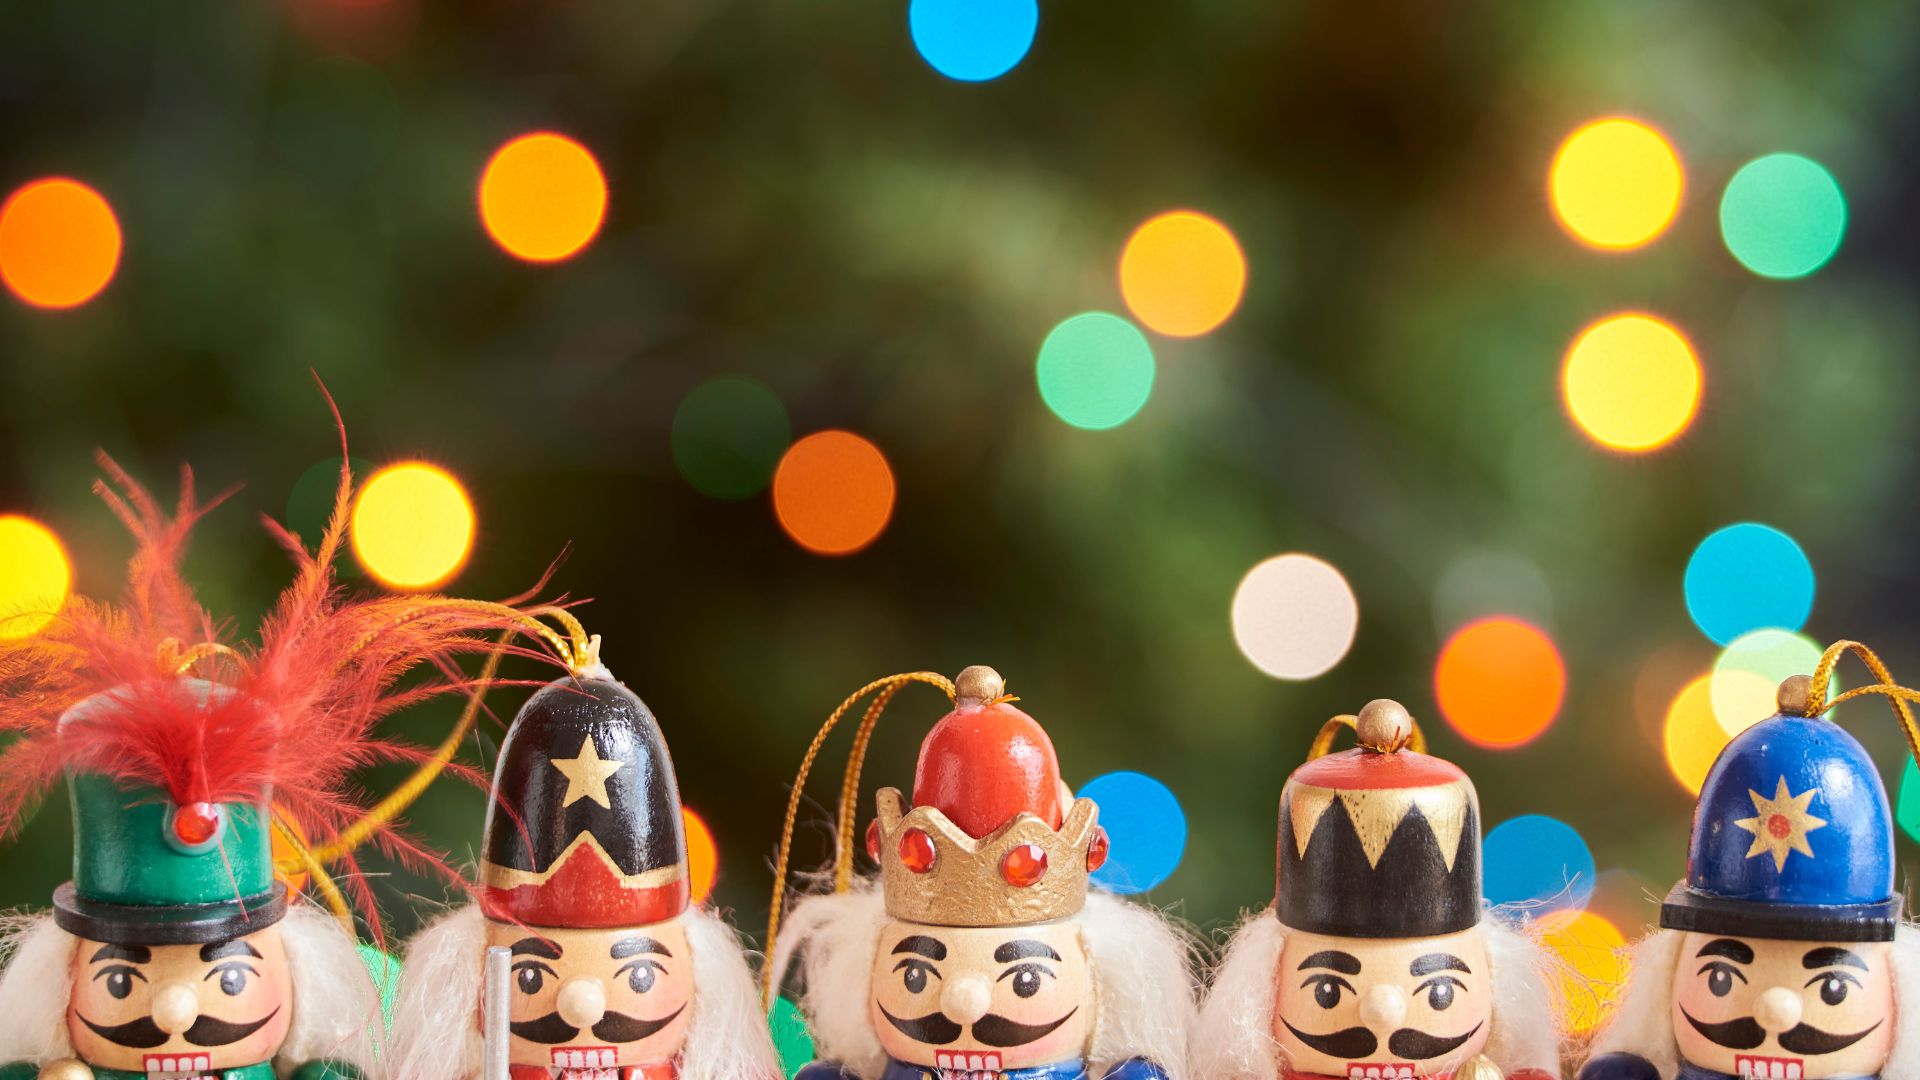 Imagem de fundo verde com bolas coloridas. Em destaque, vários enfeites de bonecos para pendurar na árvore de Natal.